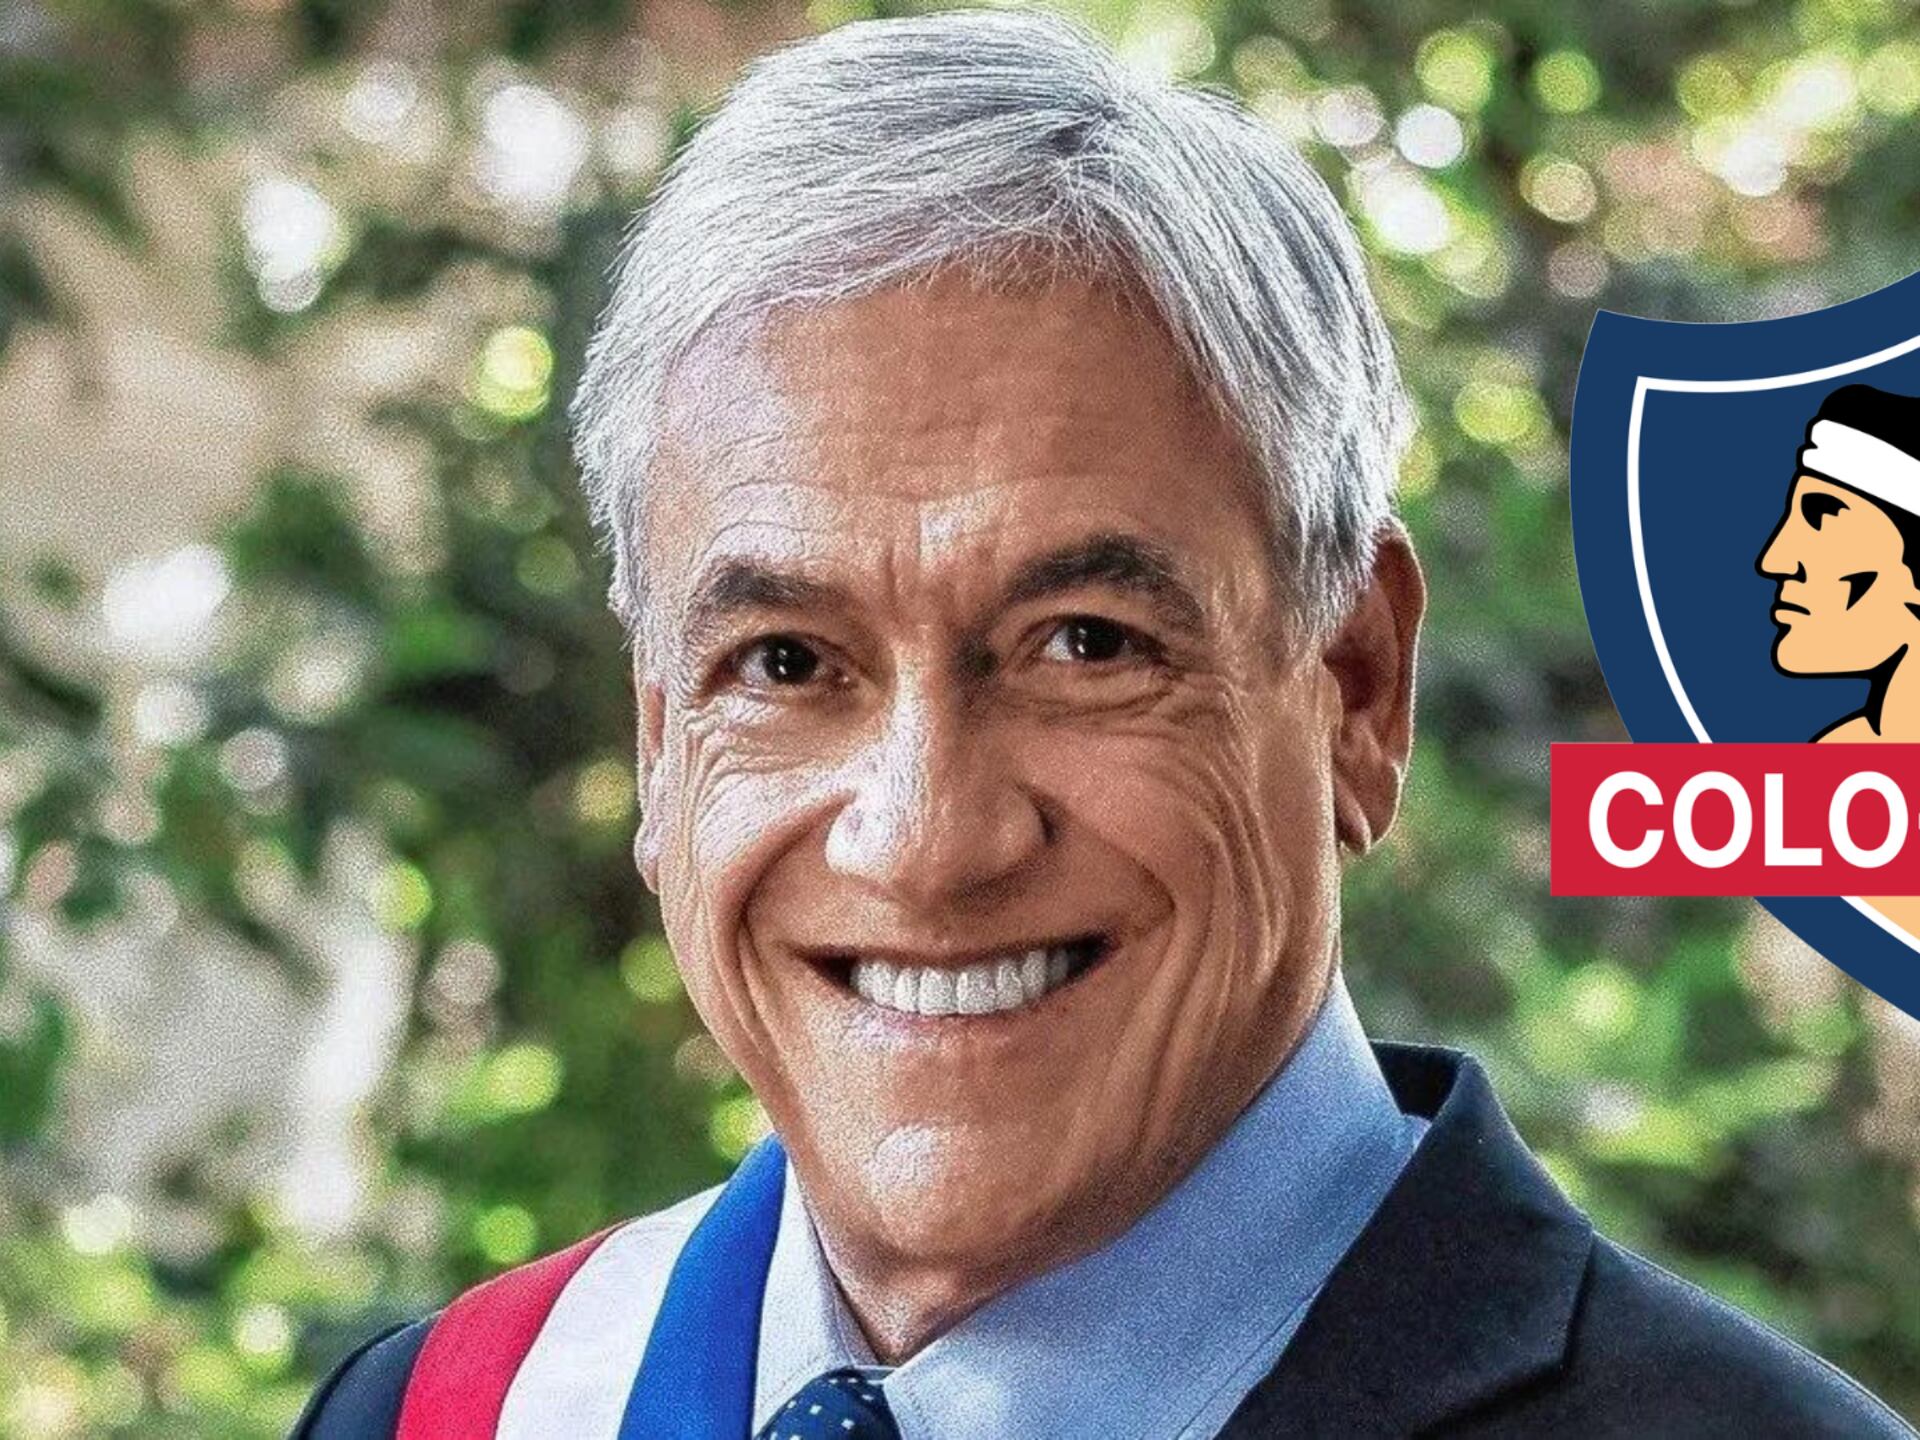 Falleció Sebastián Piñera, ex dueño de Colo Colo y ex presidente de Chile